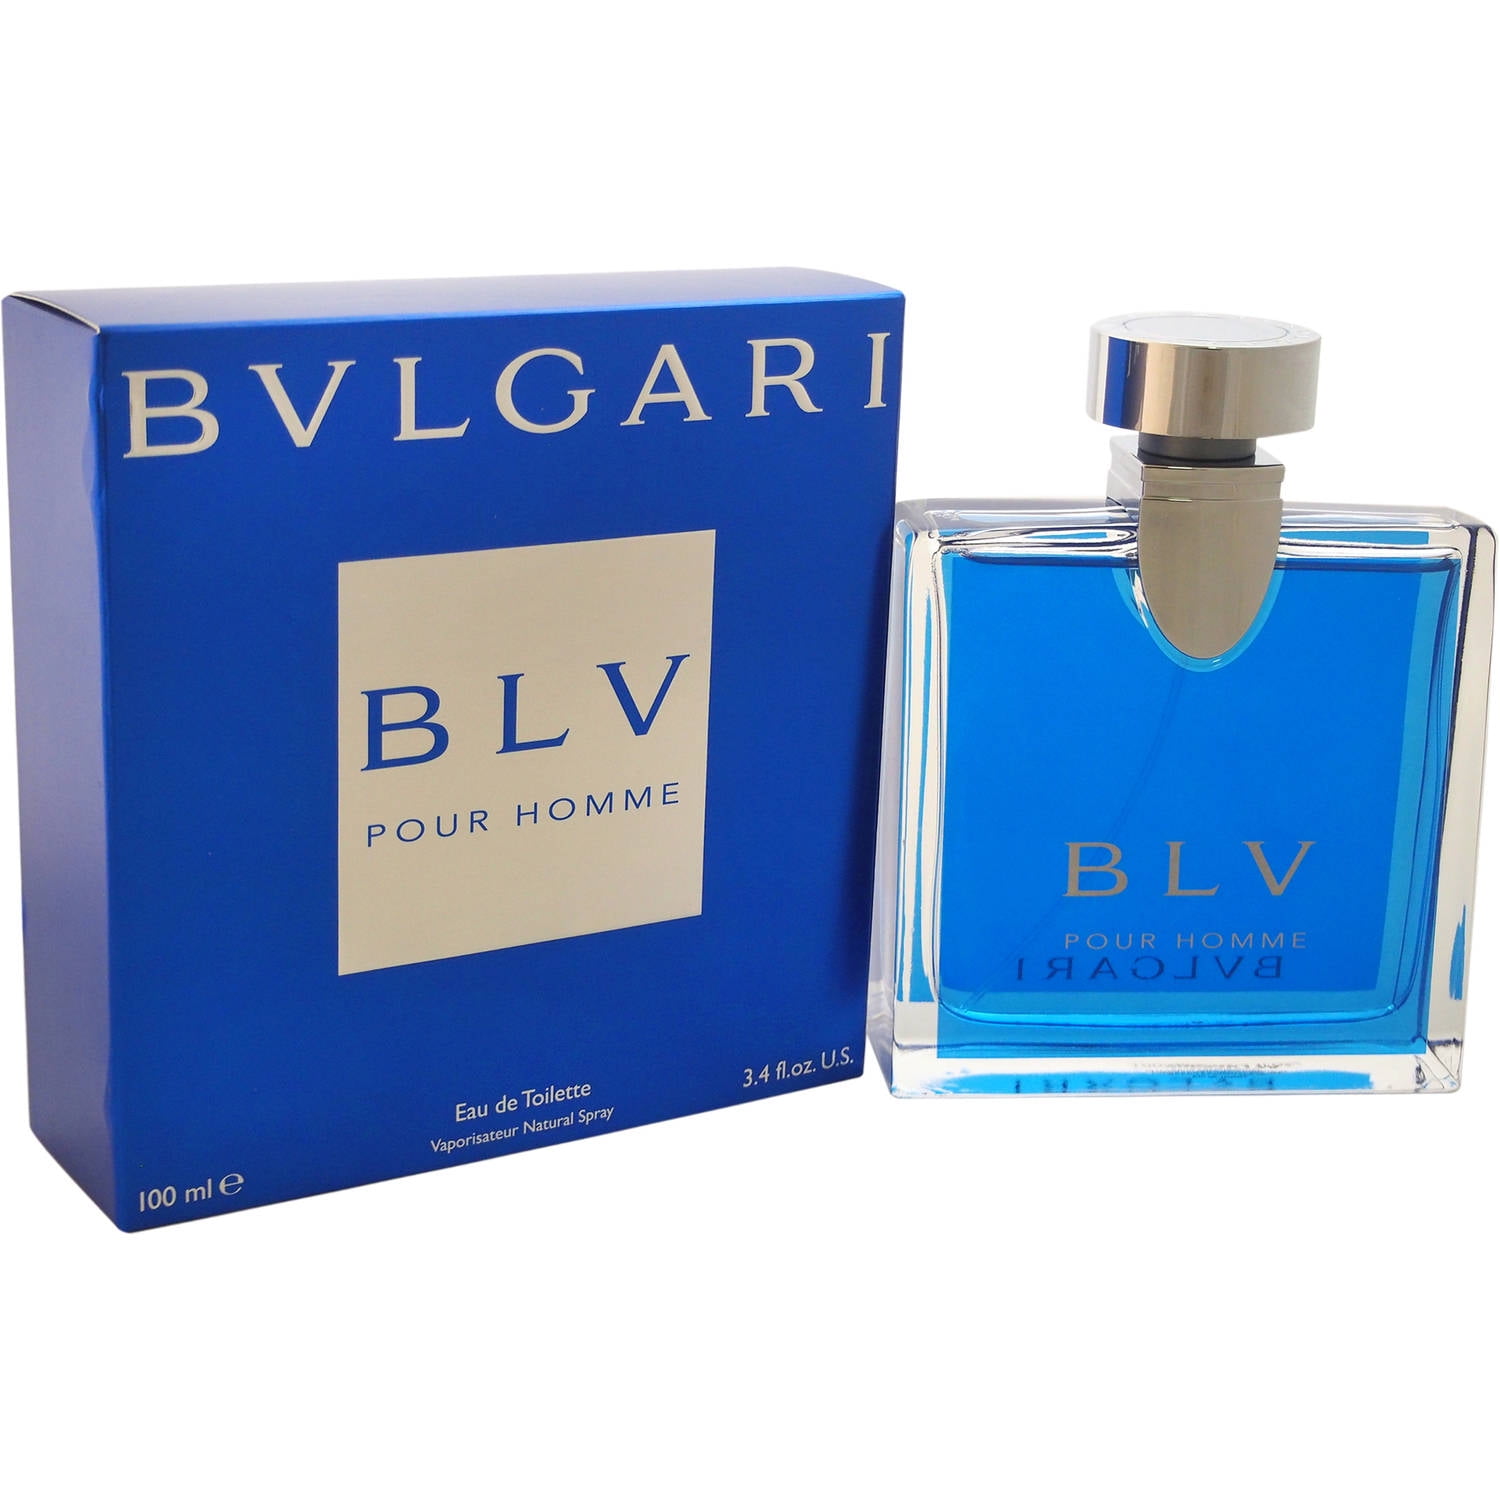 Bulgari+BLV+3.4oz+Men%27s+Eau+de+Toilette for sale online